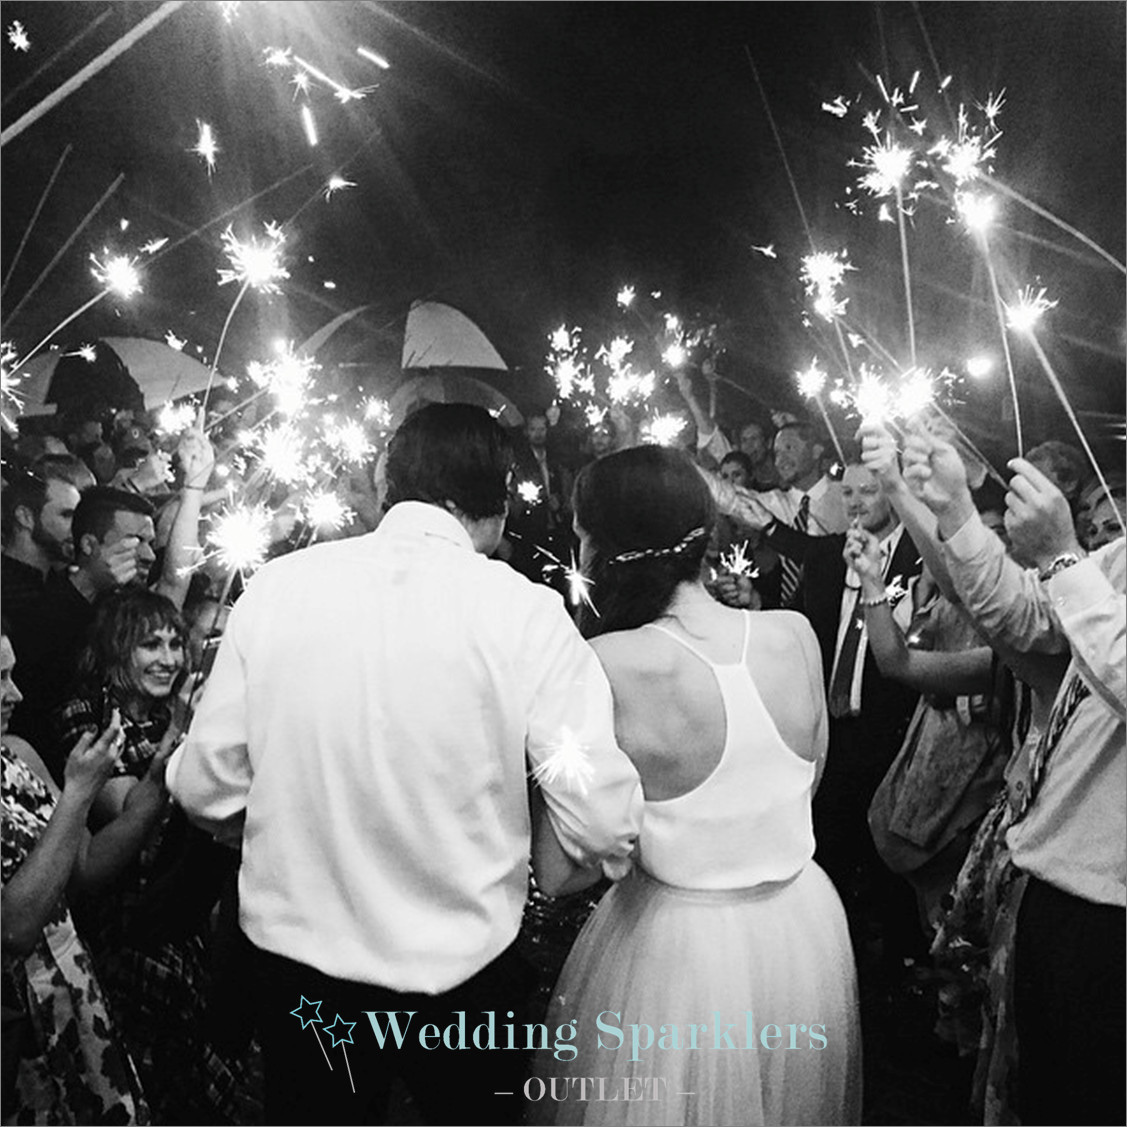 Buy Wedding Sparklers Online
 Wedding sparklers for your sendoff